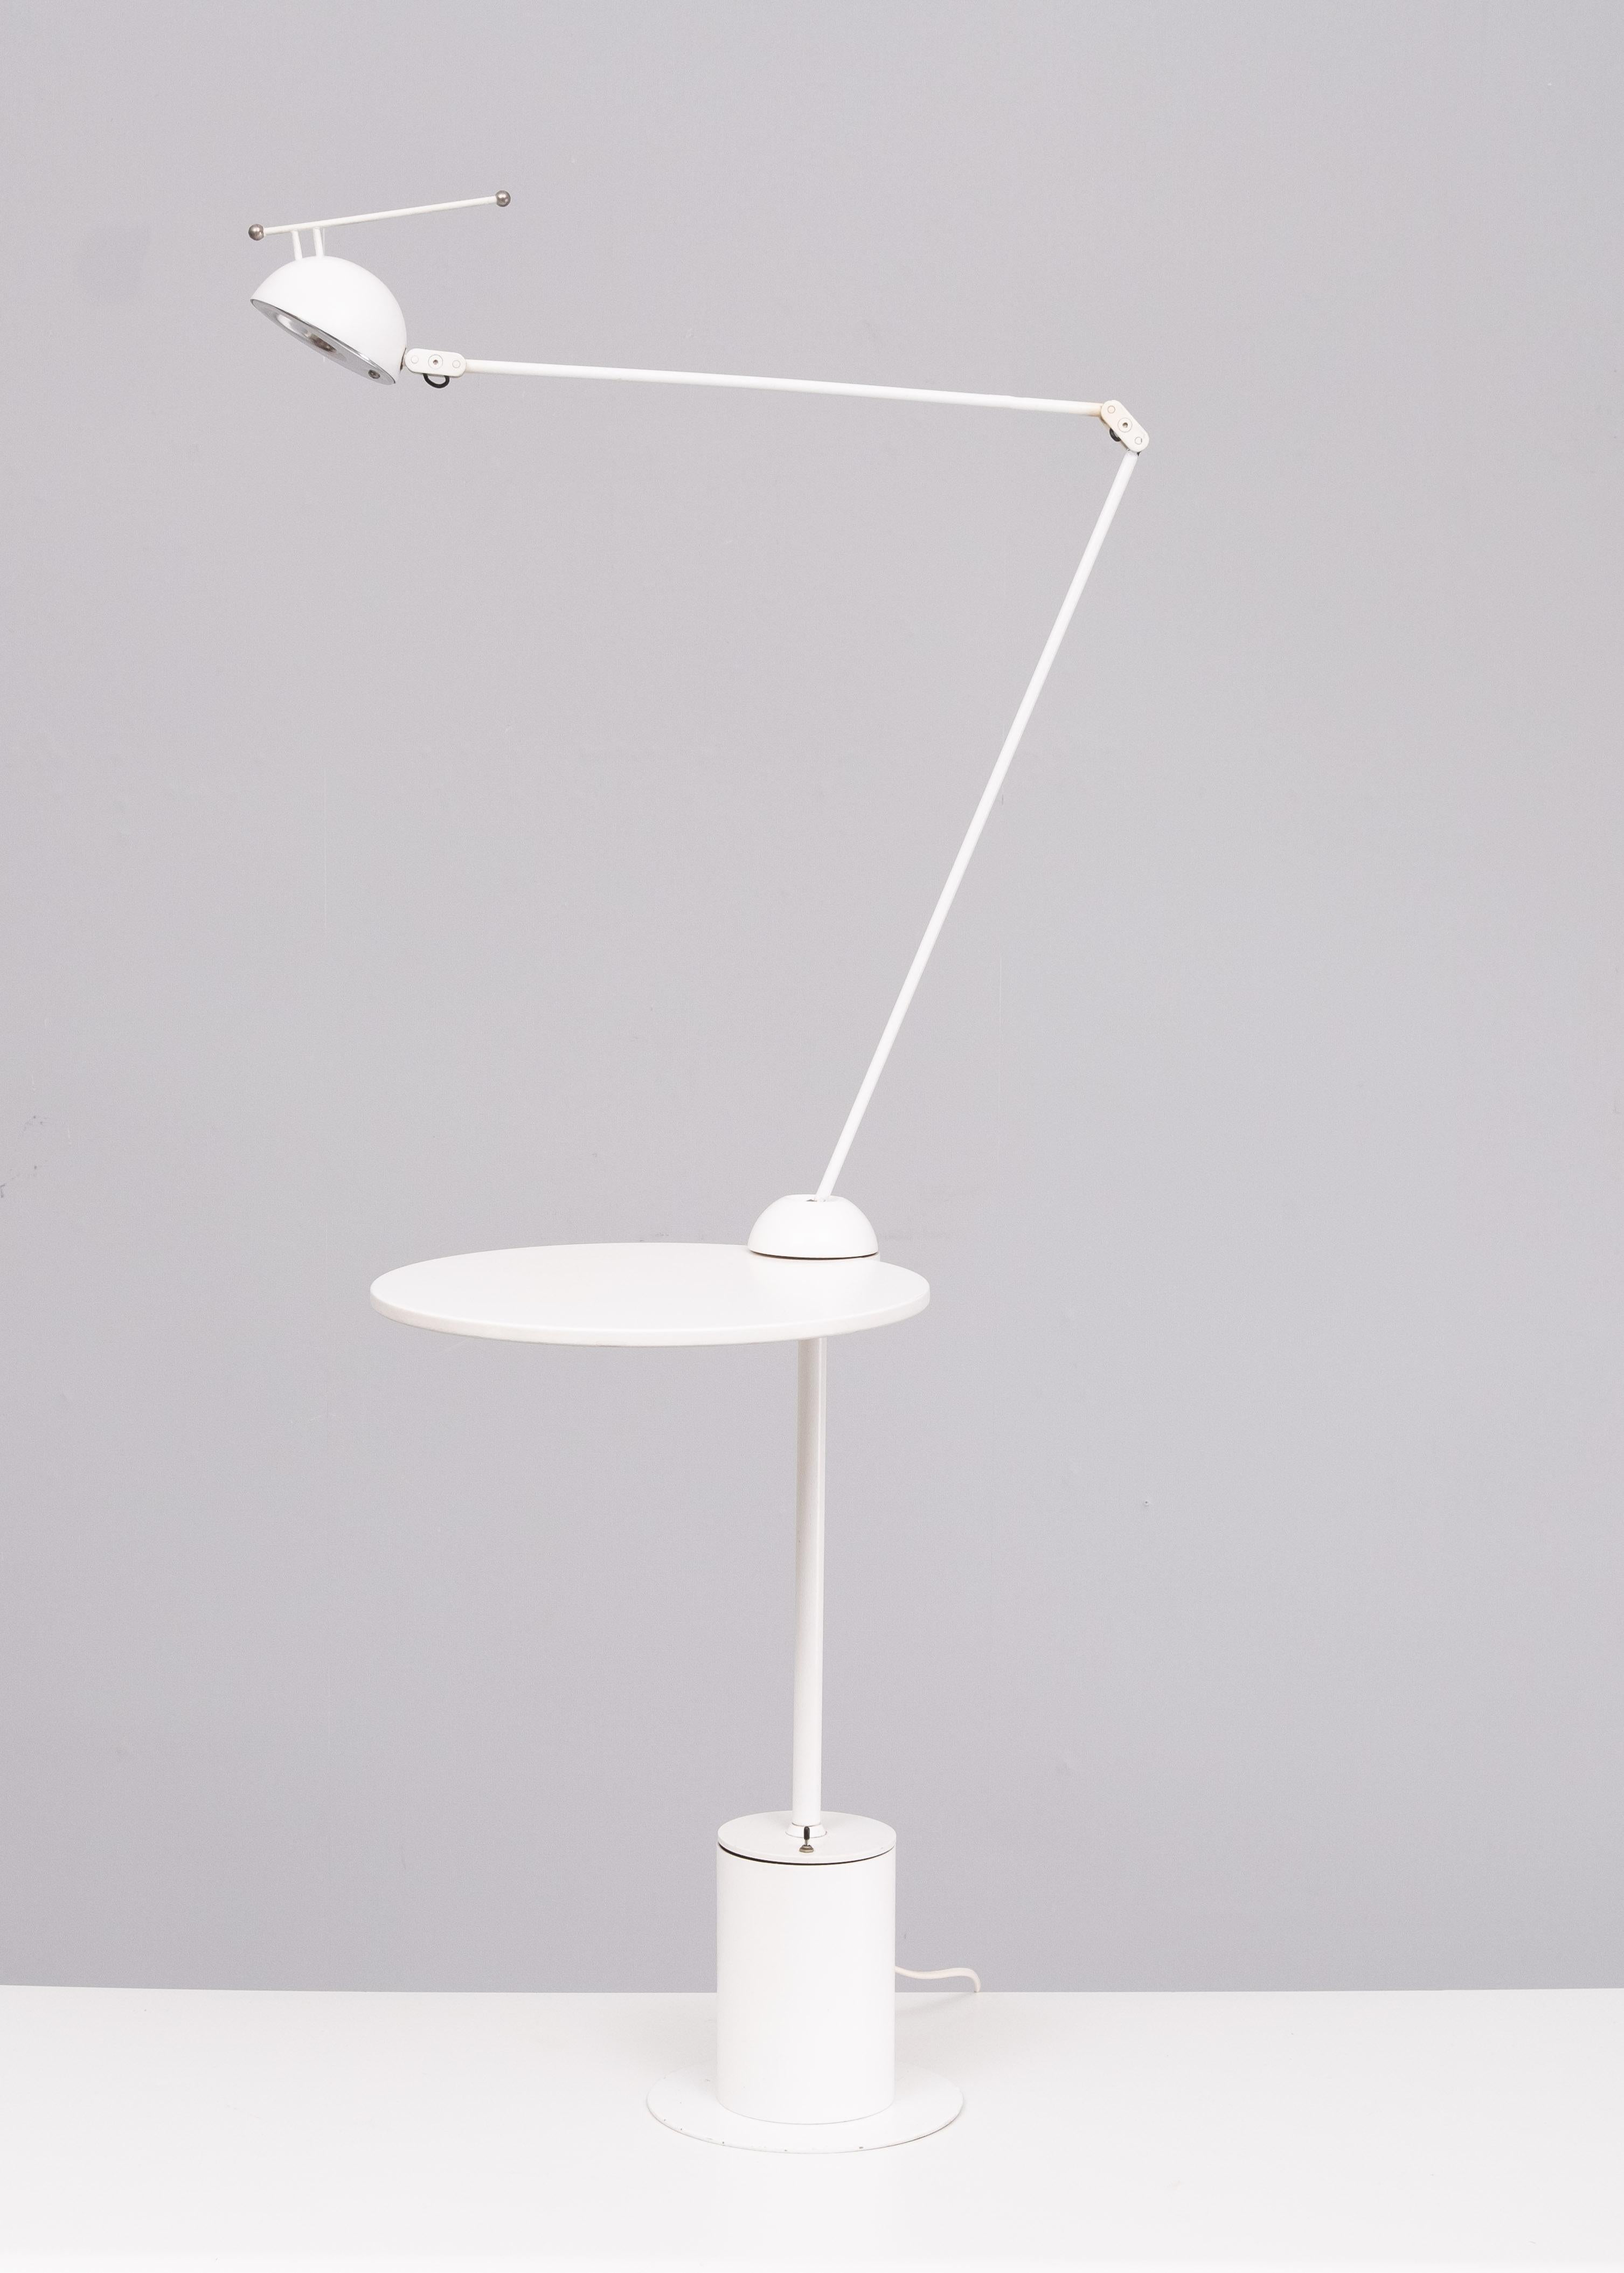 Table d'appoint postmoderne avec lampe par edward geluk pour Arco, années 1980. Halogène, deux positions. Belle pièce. Usure normale.
